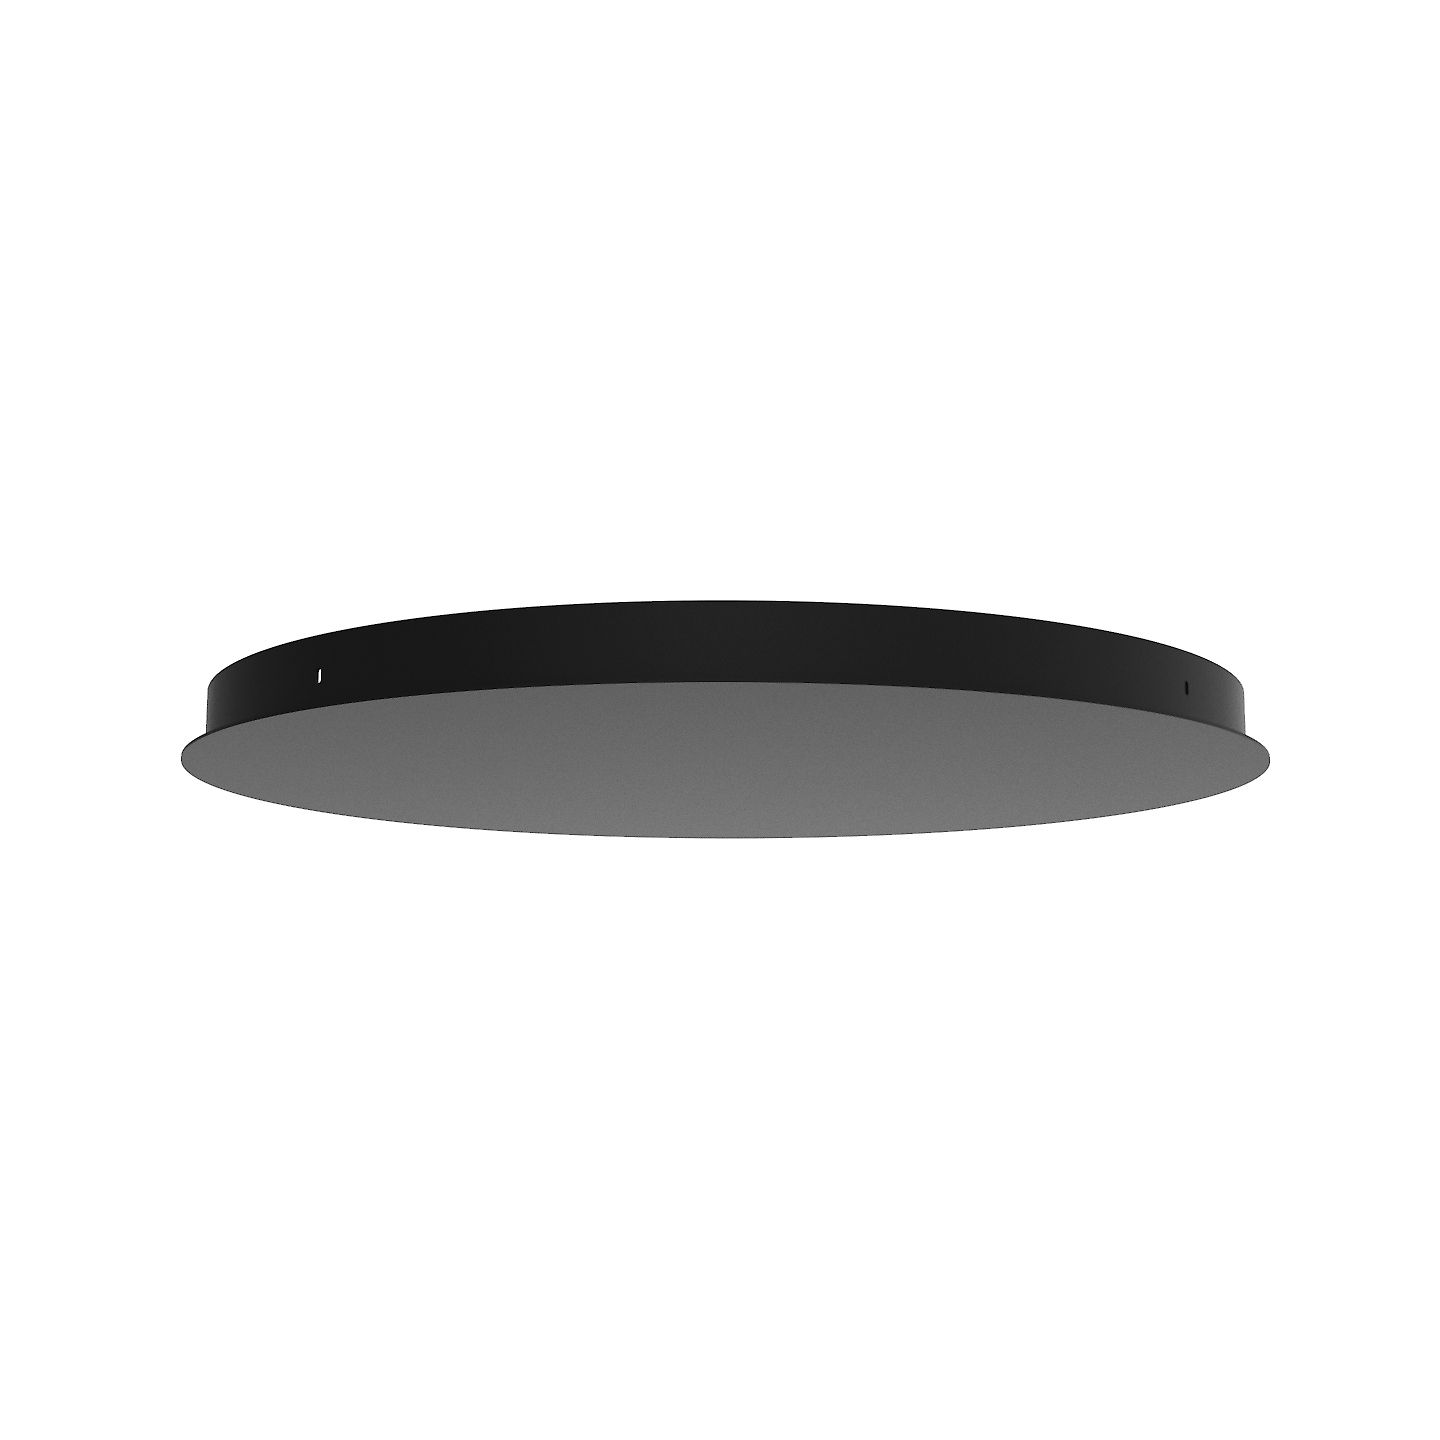 Observatie brand projector Artdelight Plate - plafondplaat uitbreidbaar tot 7 lampen - Ø 50 cm - zwart  | Lichtkoning